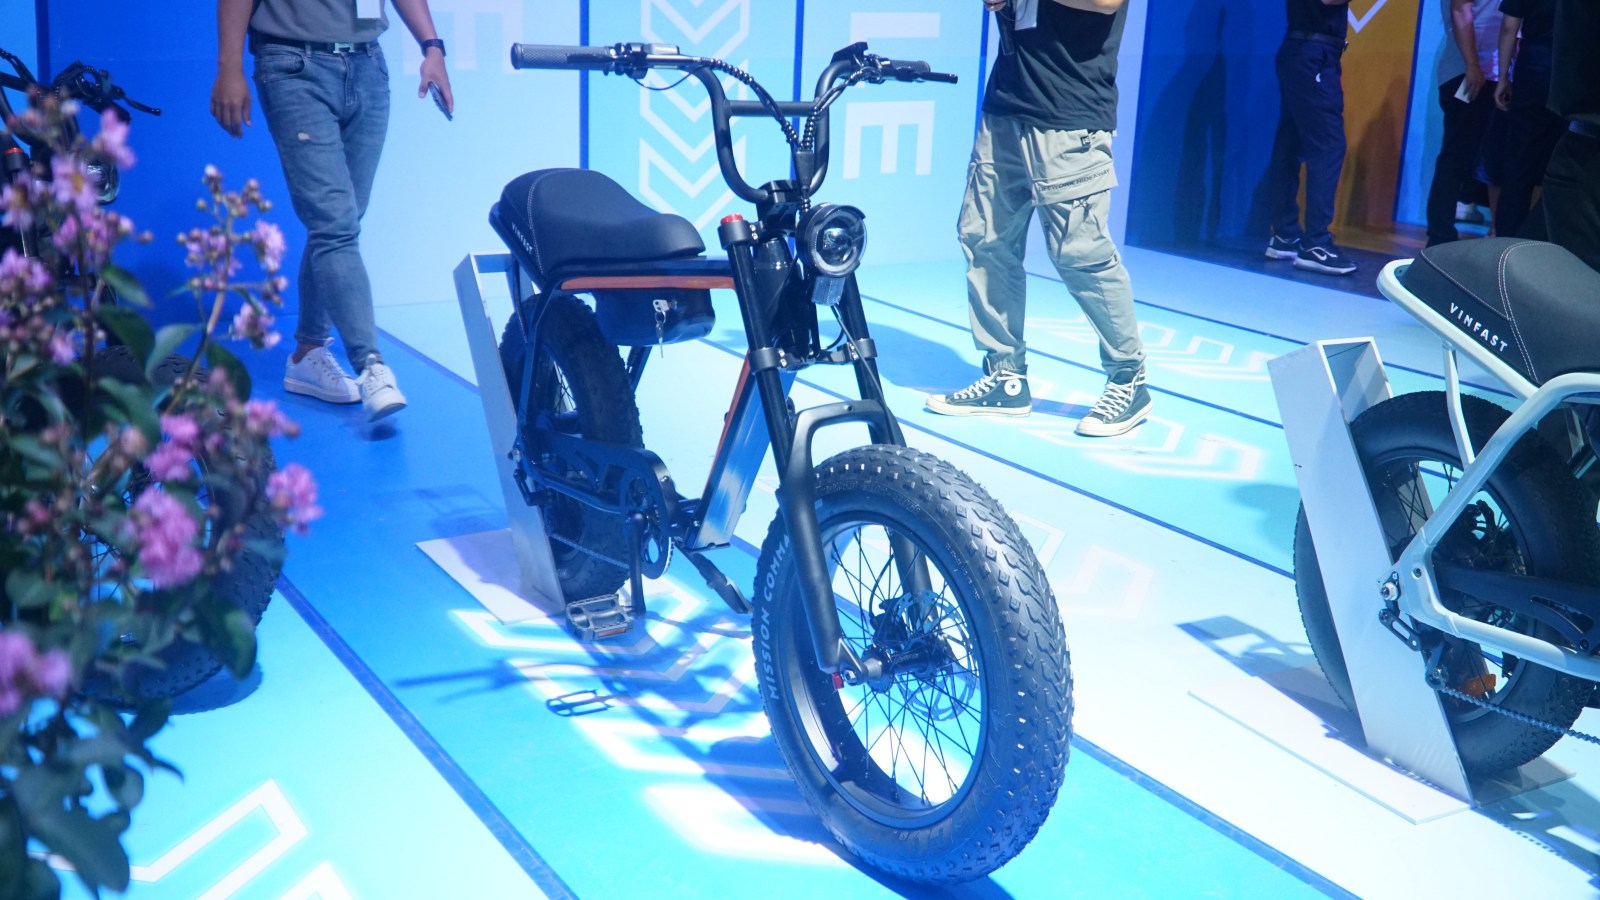 VinFast lần đầu ra mắt xe đạp điện: Dáng xe máy, tốc độ 32 km/h, pin có thể tháo rời - Ảnh 1.